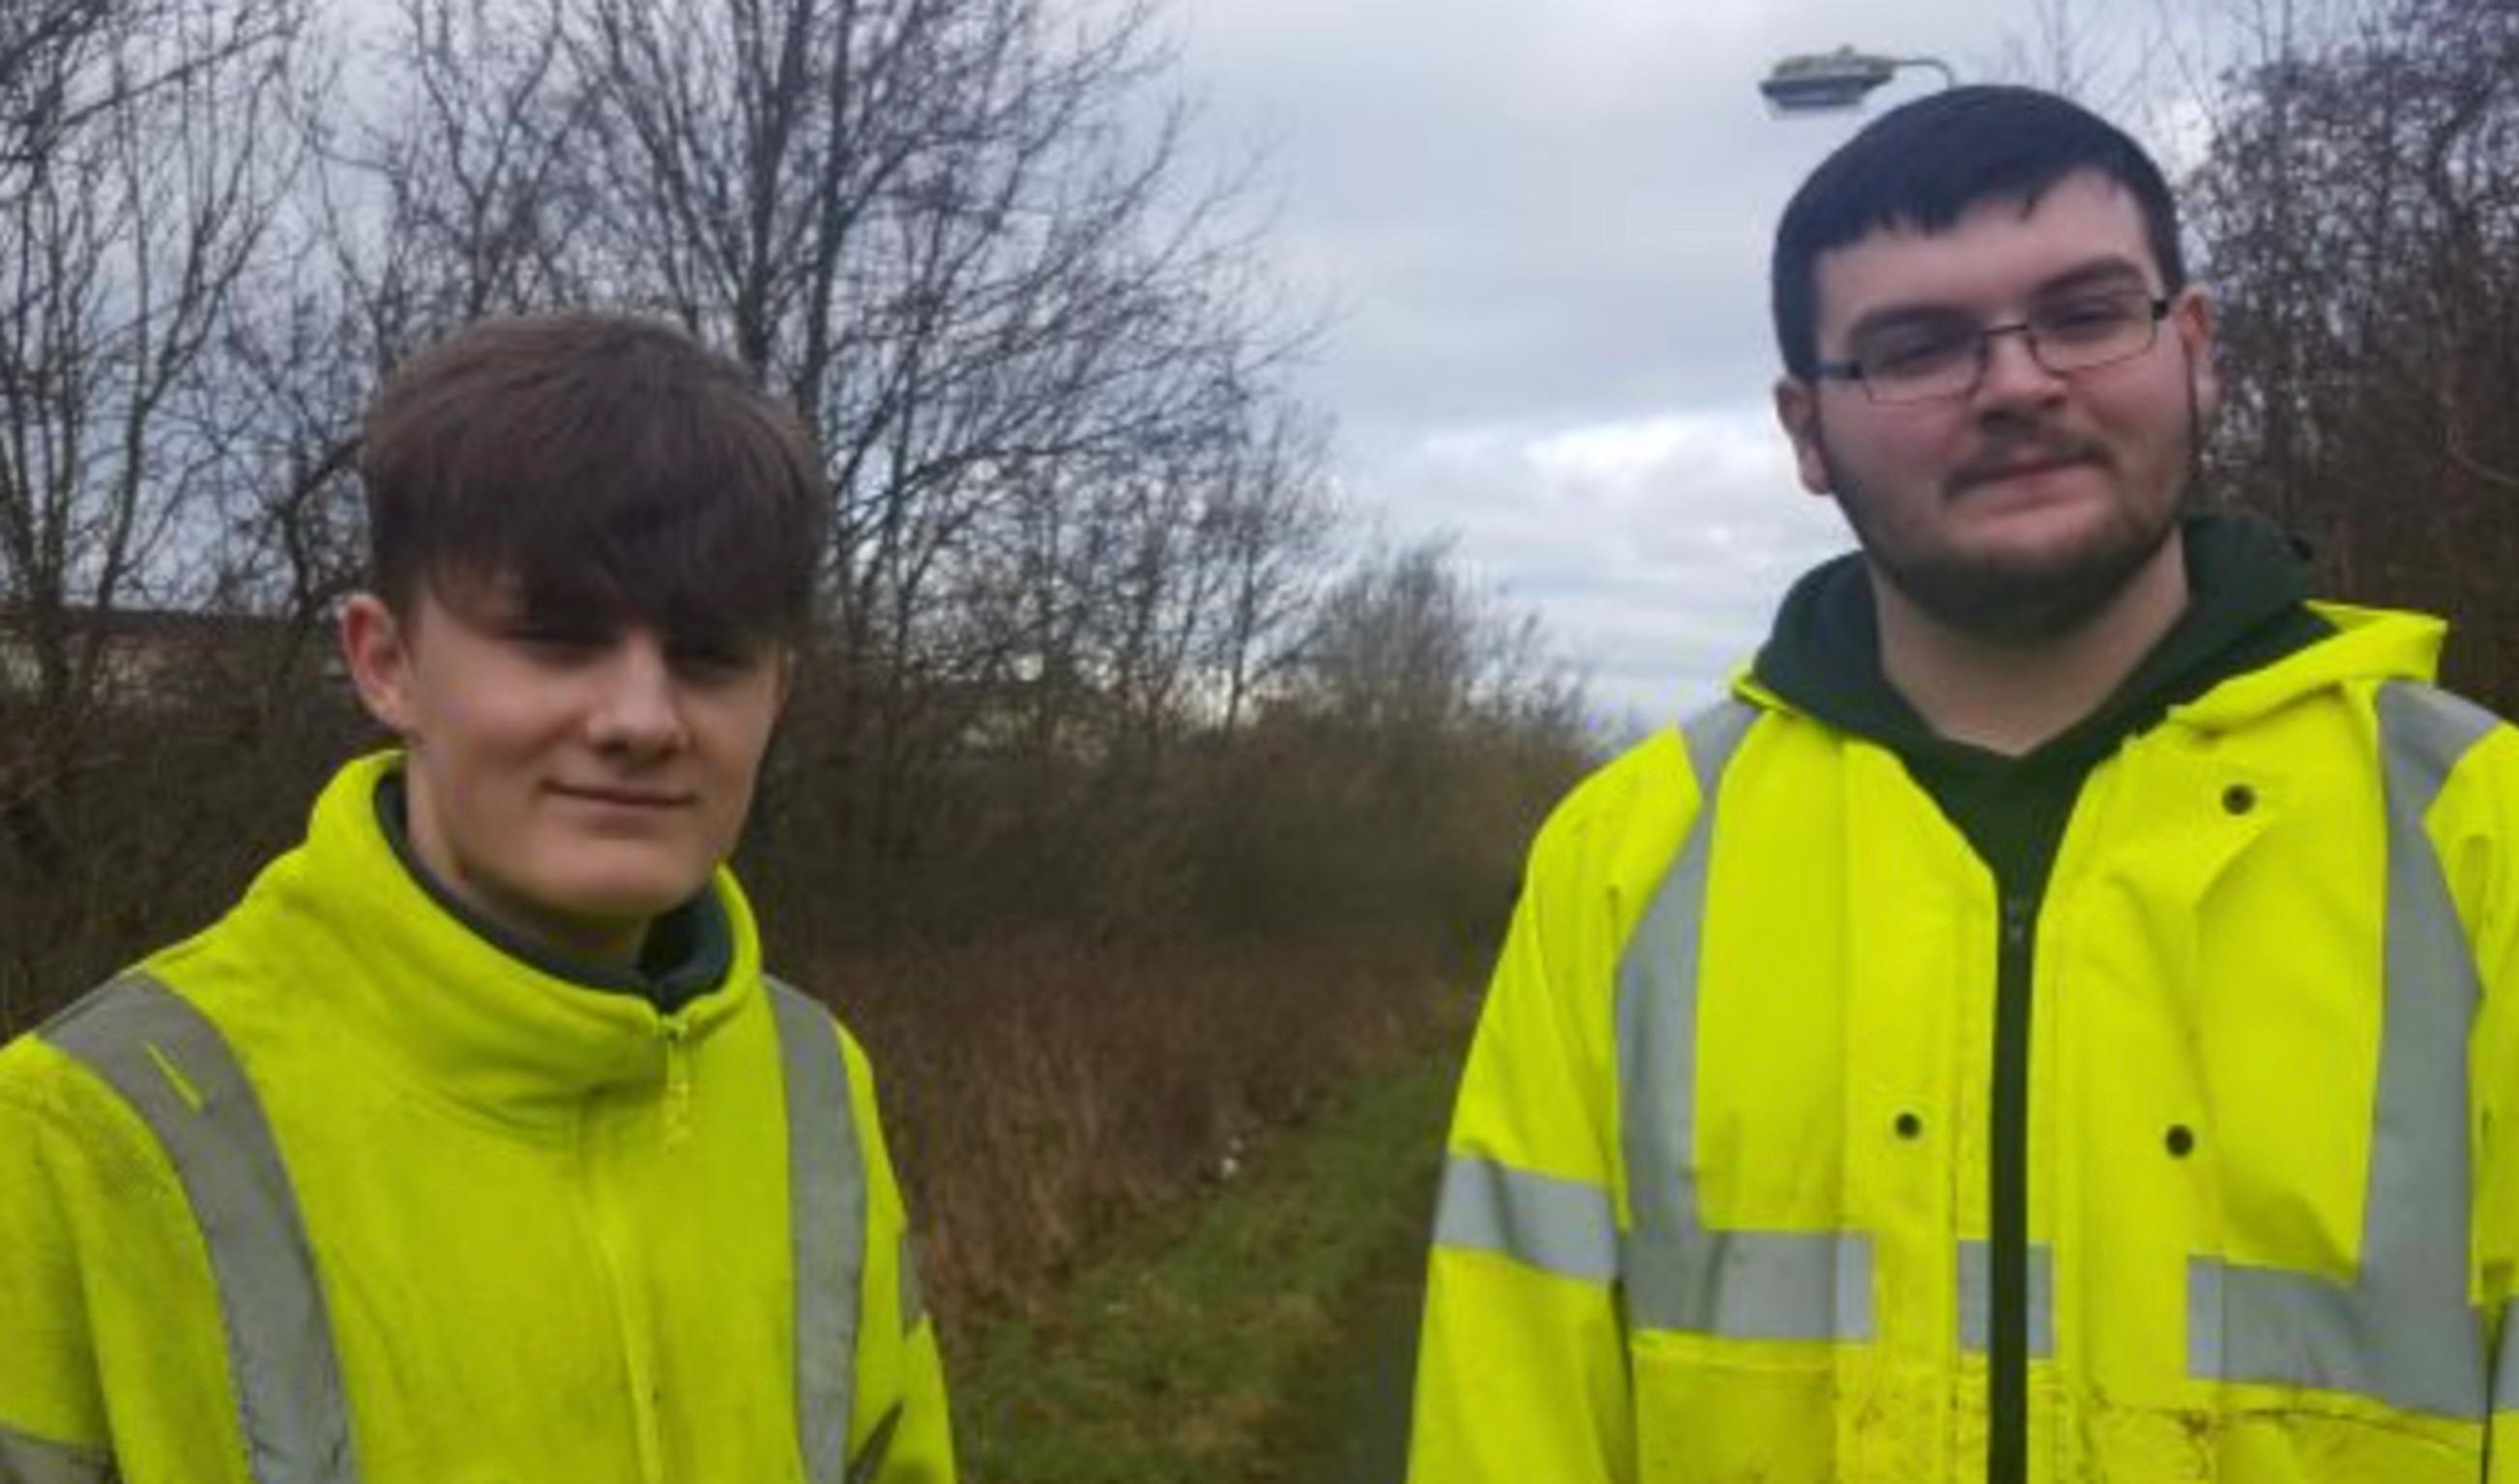 Sustrans apprentices Todd Dixon and Connor O`Neil